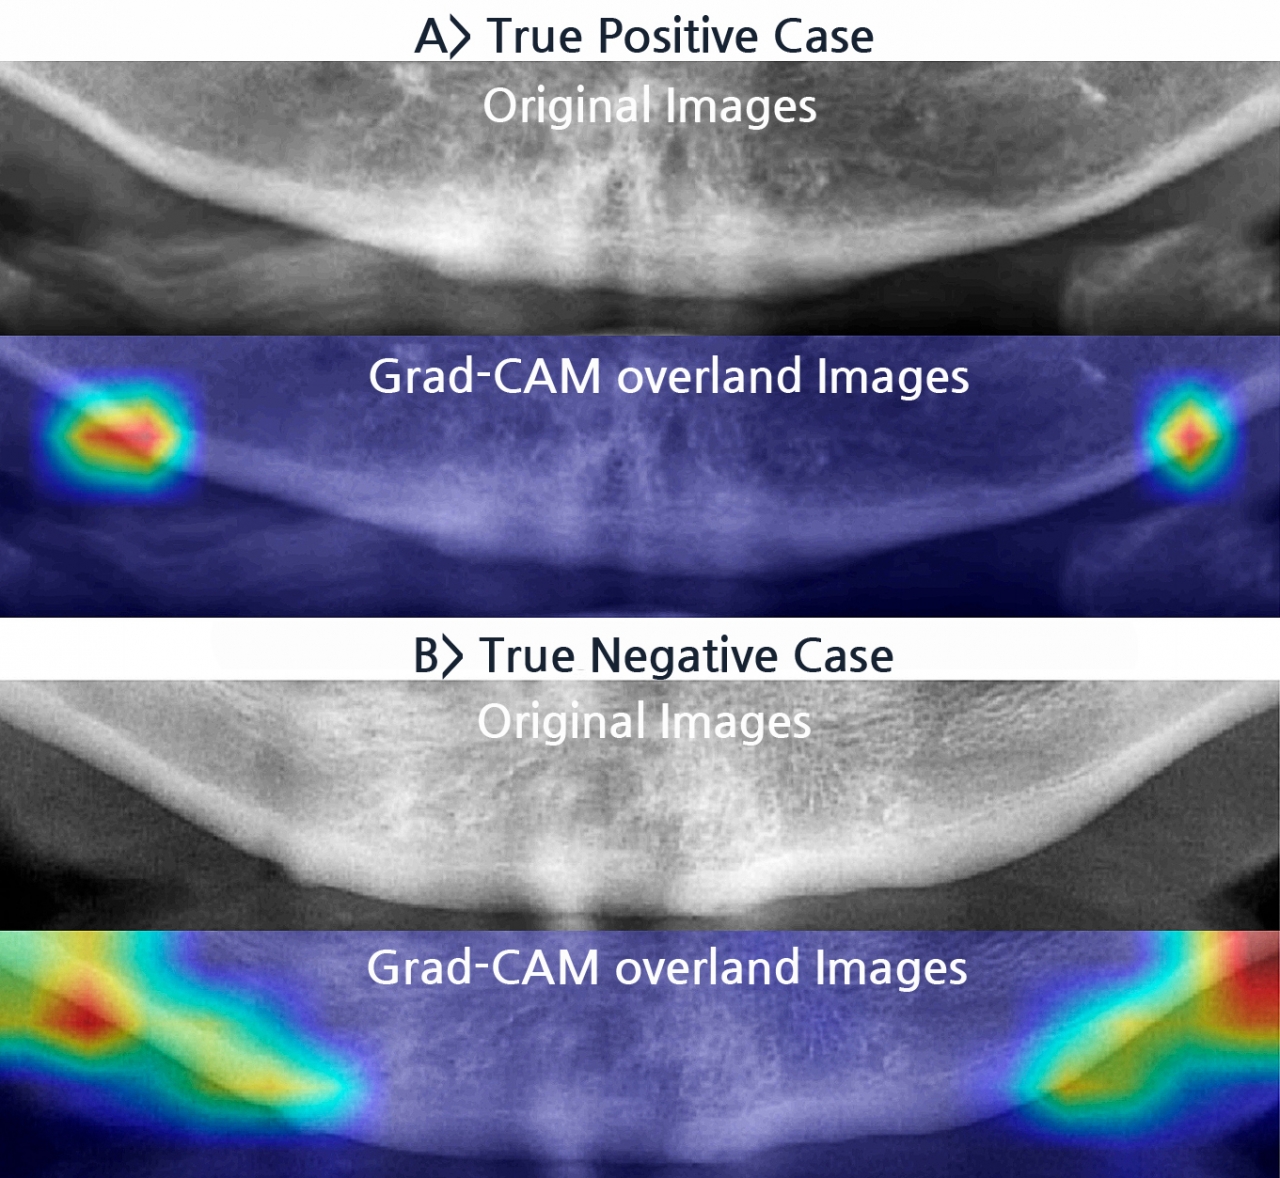 Grad-CAM 알고리즘을 이용하면 훈련된 딥러닝 모델이 골다공증 환자와 비-골다공증 환자의 치과용 파노라마 엑스레이를 분류하는 이미지상의 특이점의 위치를 알 수 있다.(사진:논문캡처)